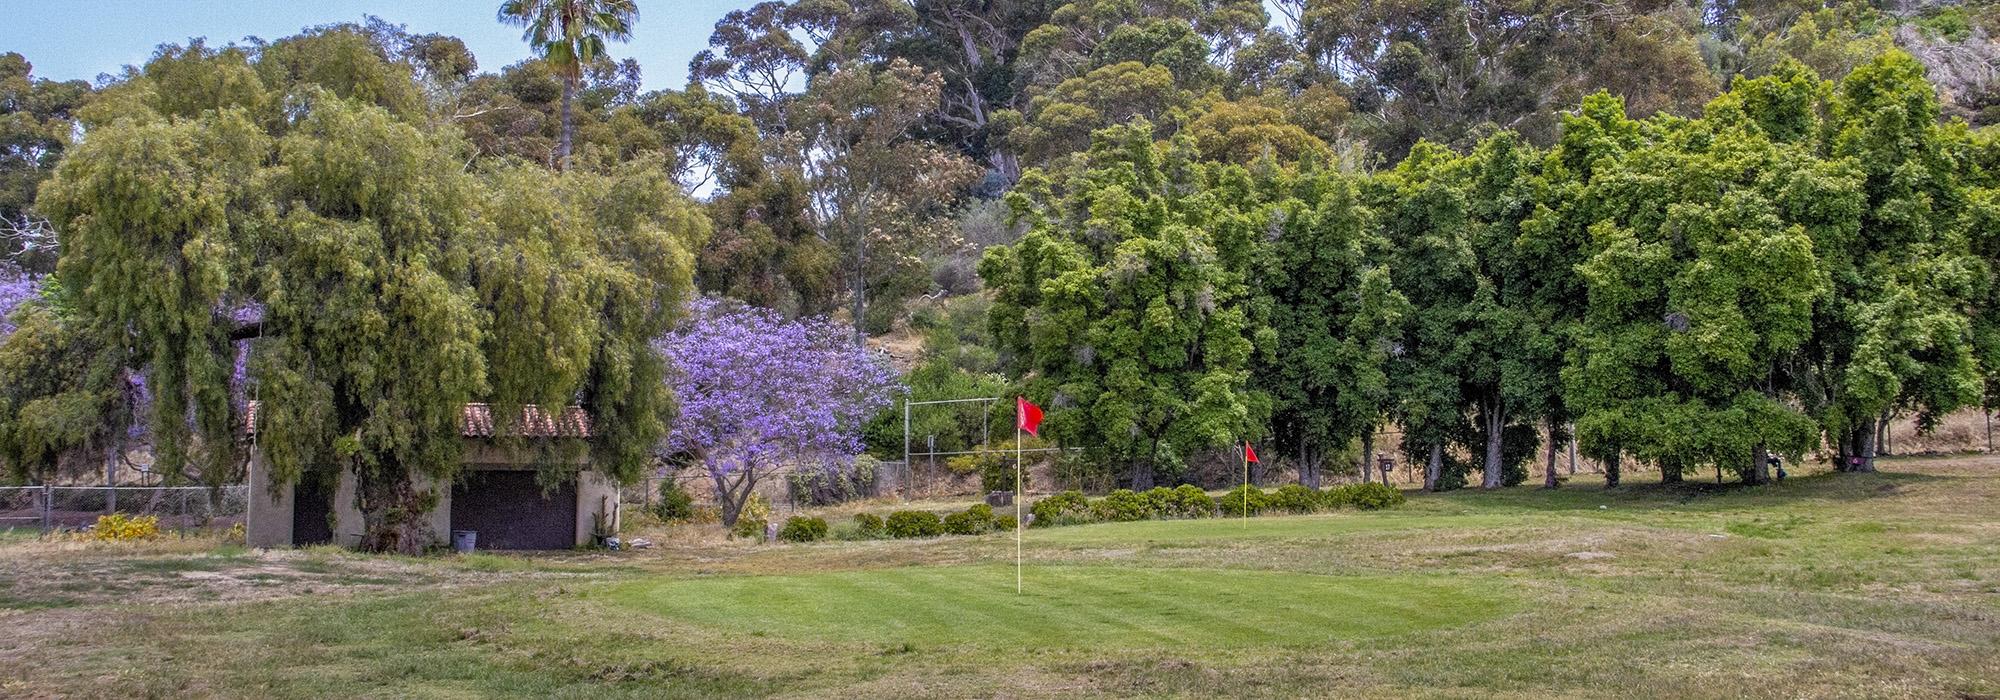 Presidio Hills Golf Course, San Diego, CA